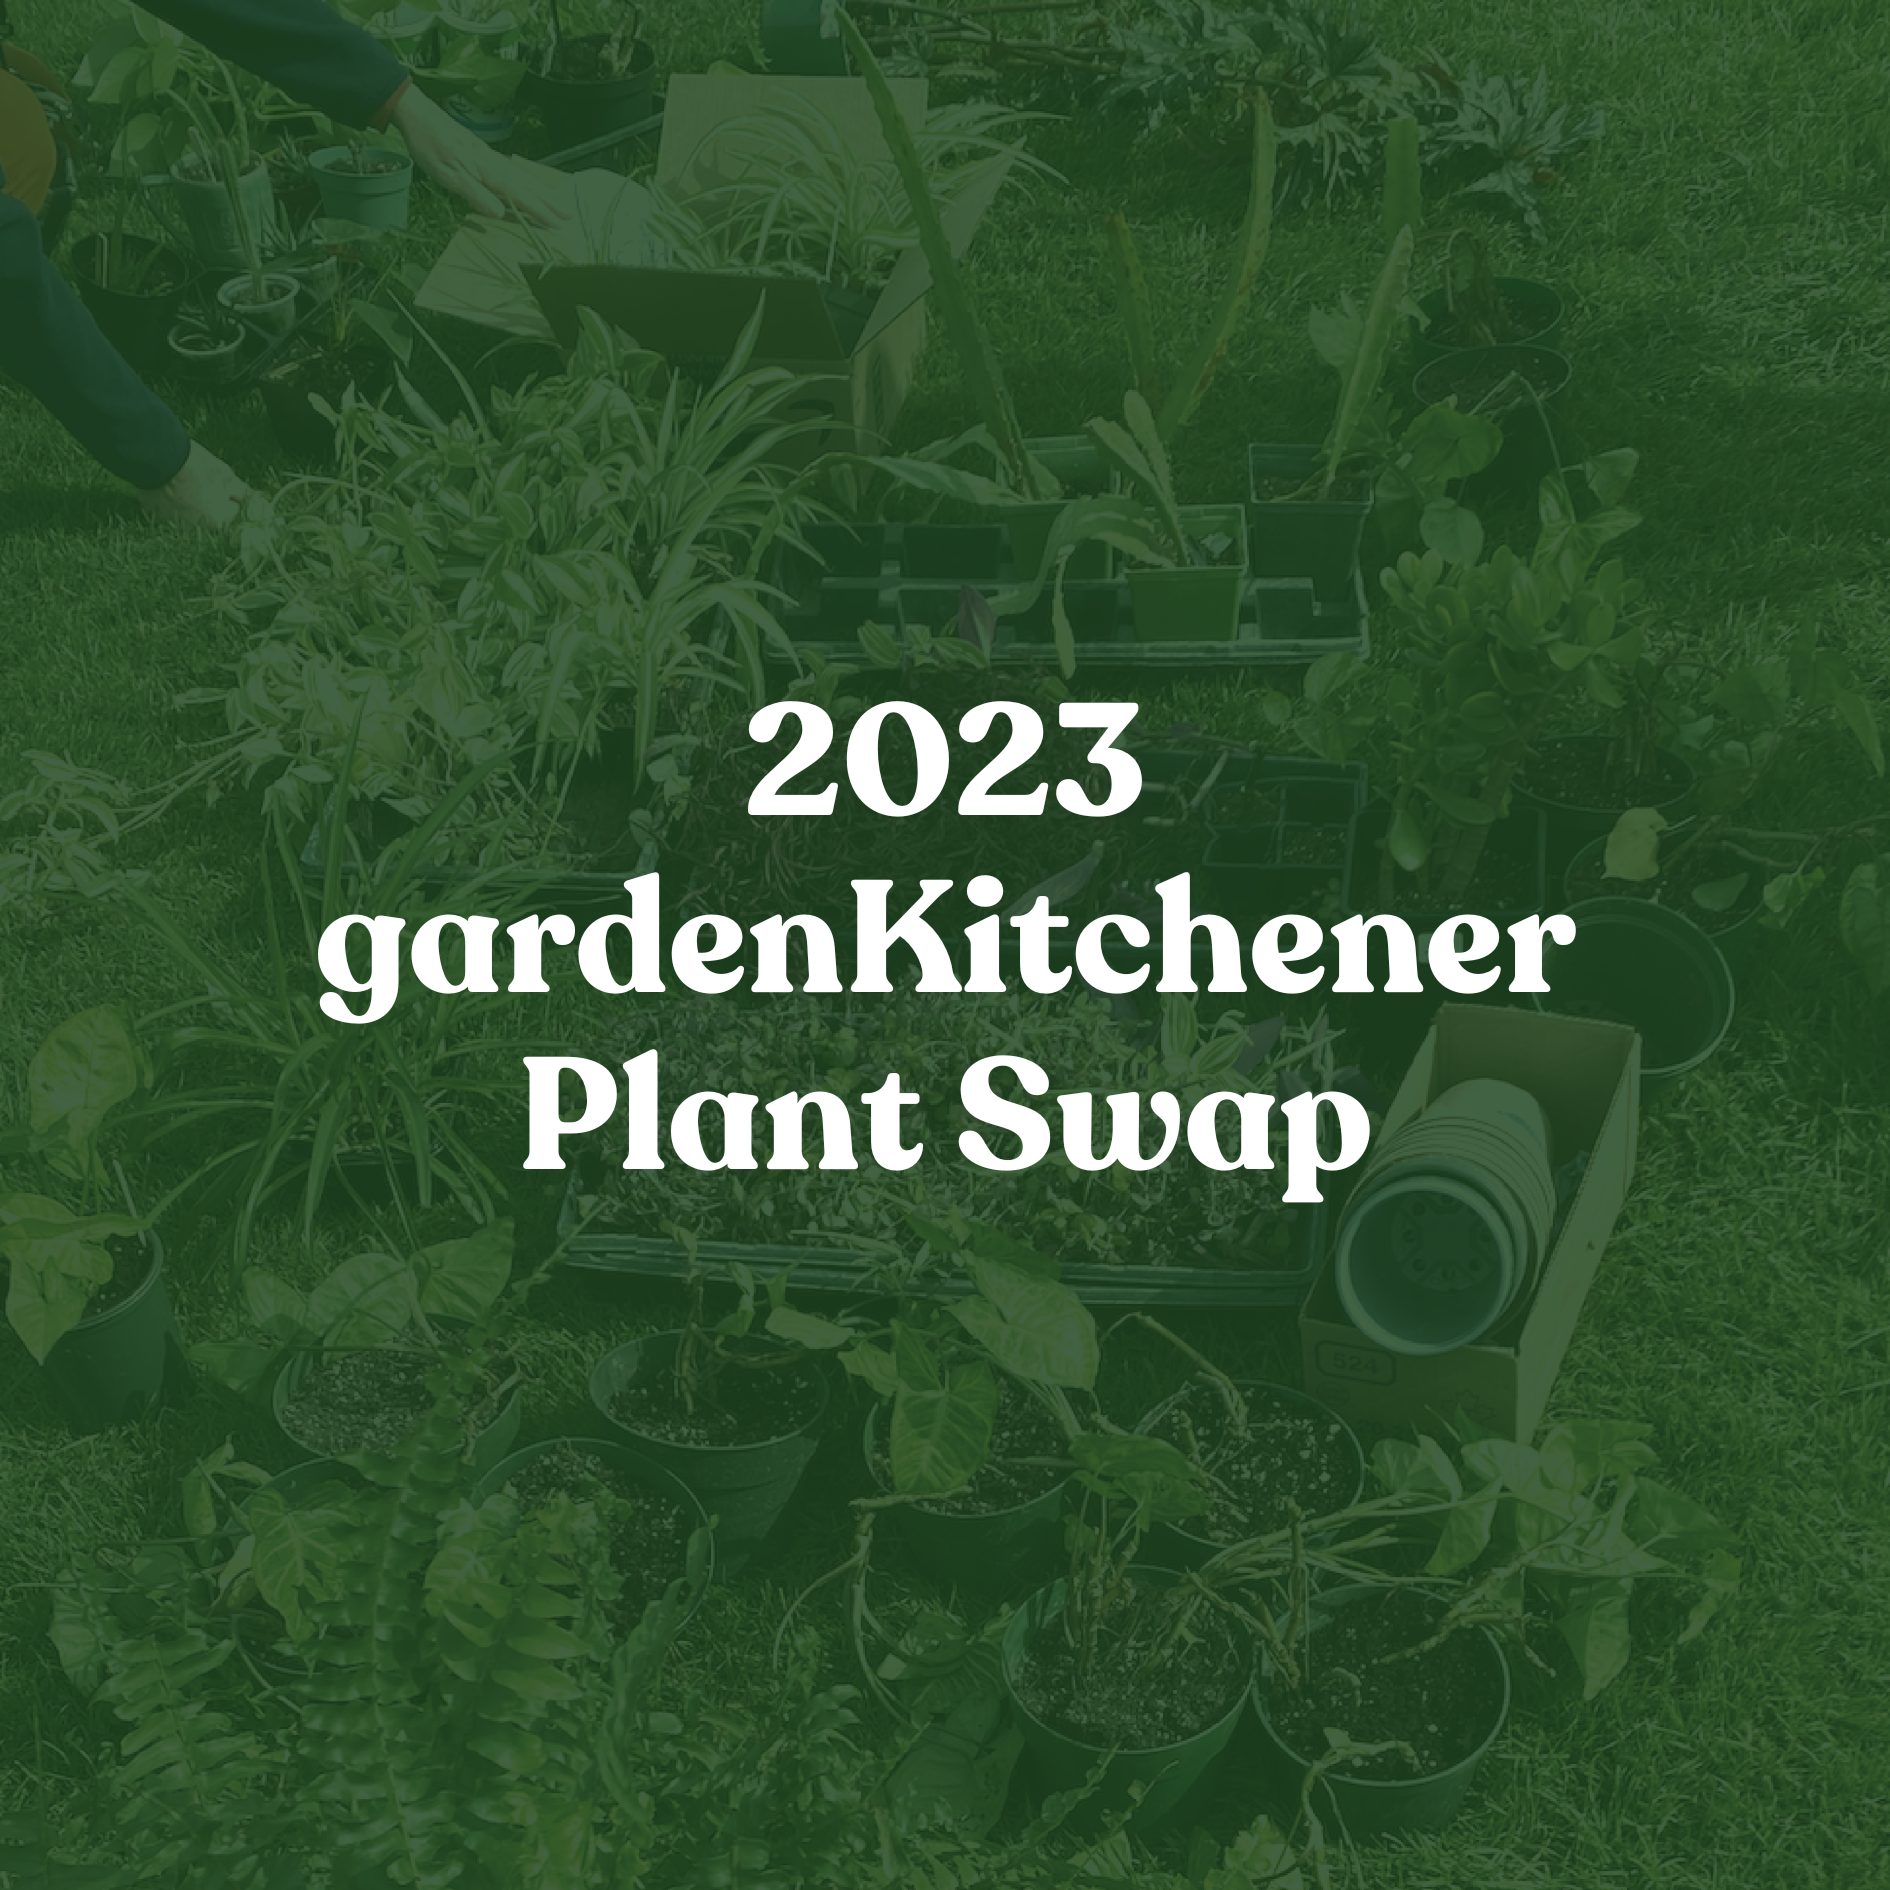 2023 gardenKitchener Plant Swap at Rockway Gardens